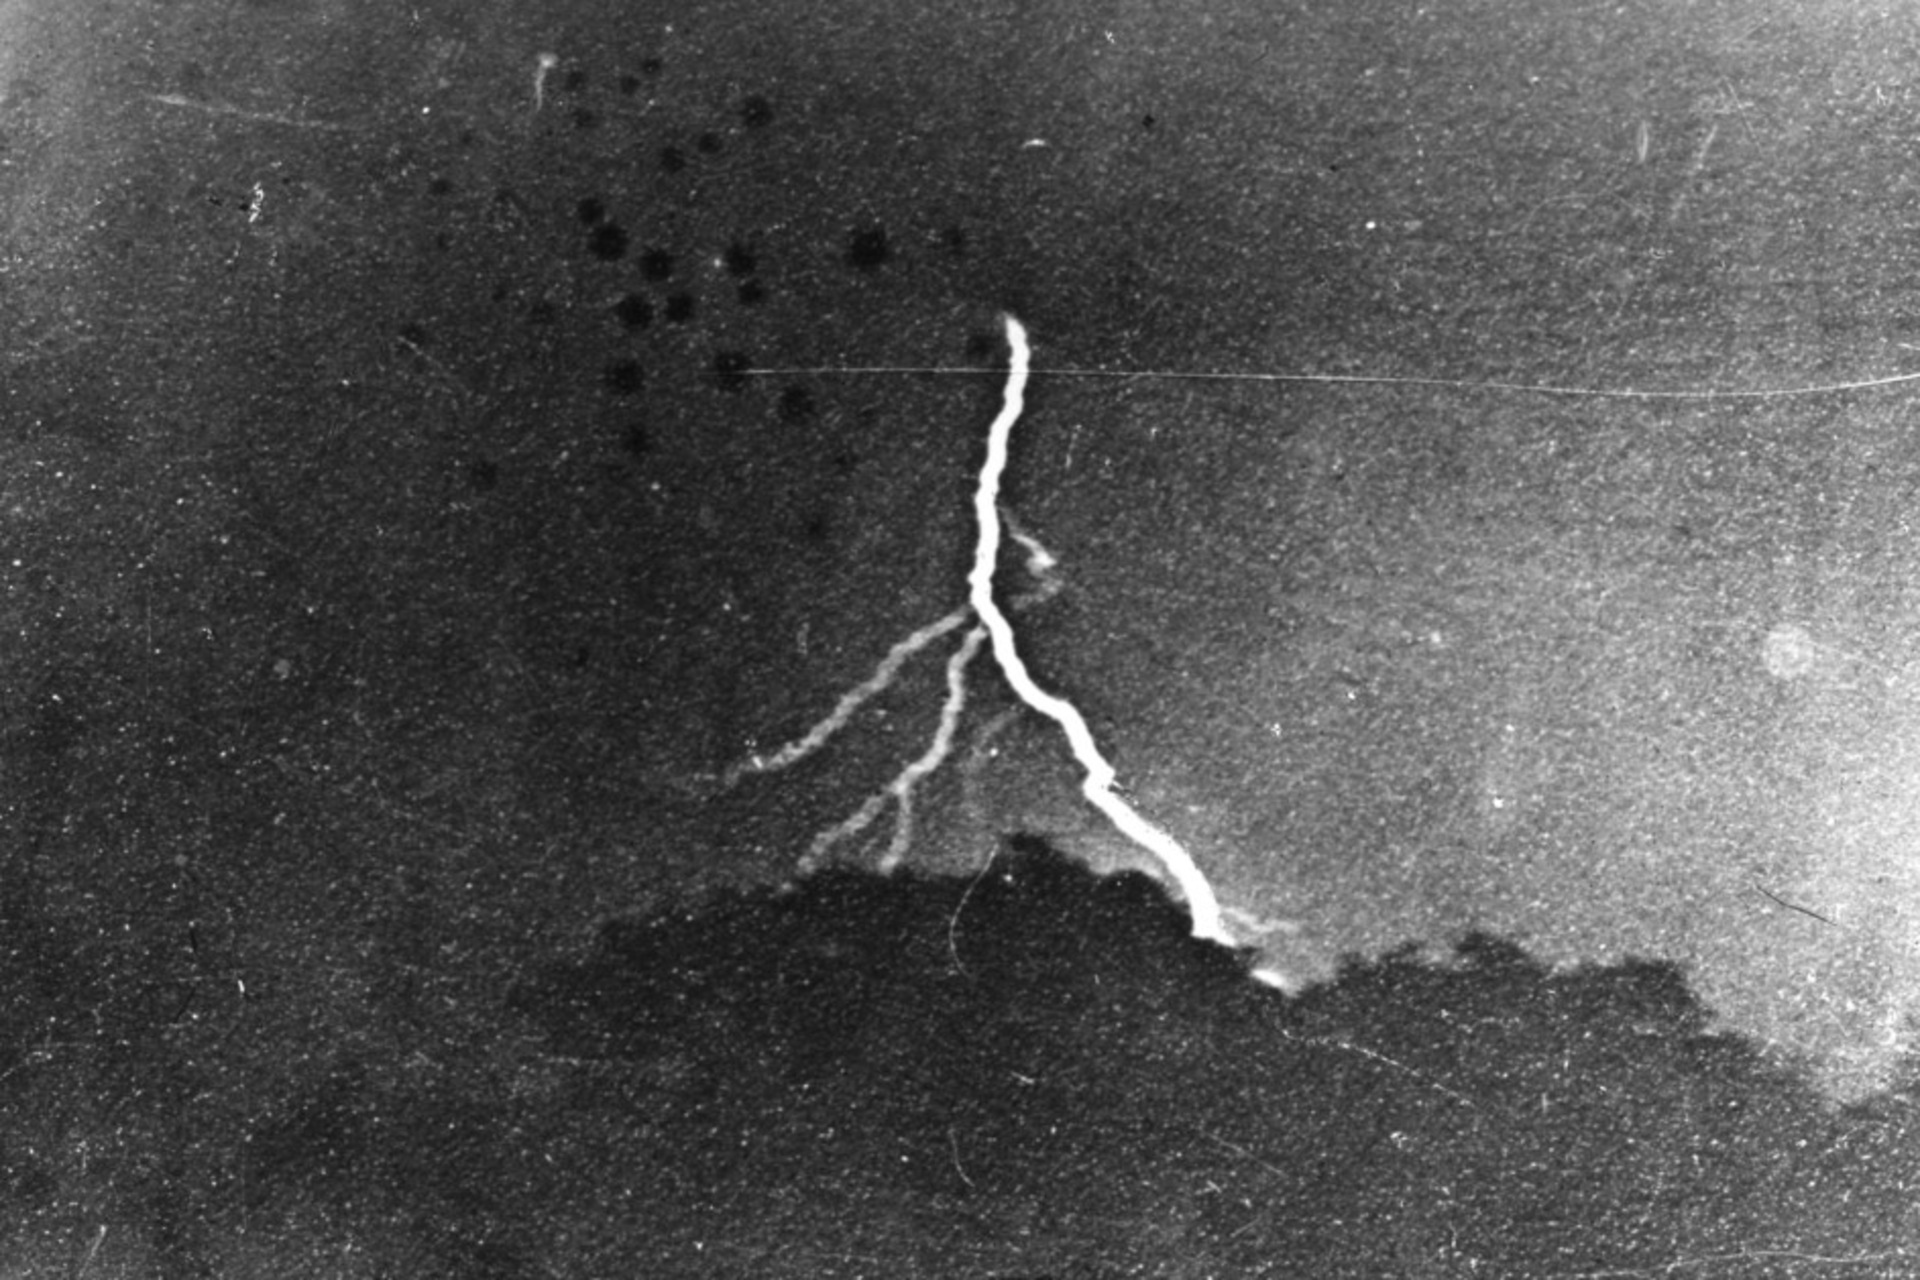 Blixt: Det första fotografiet av blixten, taget av William Nicholson Jennings den 2 september 1882 i Philadelphia, och bevarat som ett gelatinsilvertryck vid The Franklin Institute